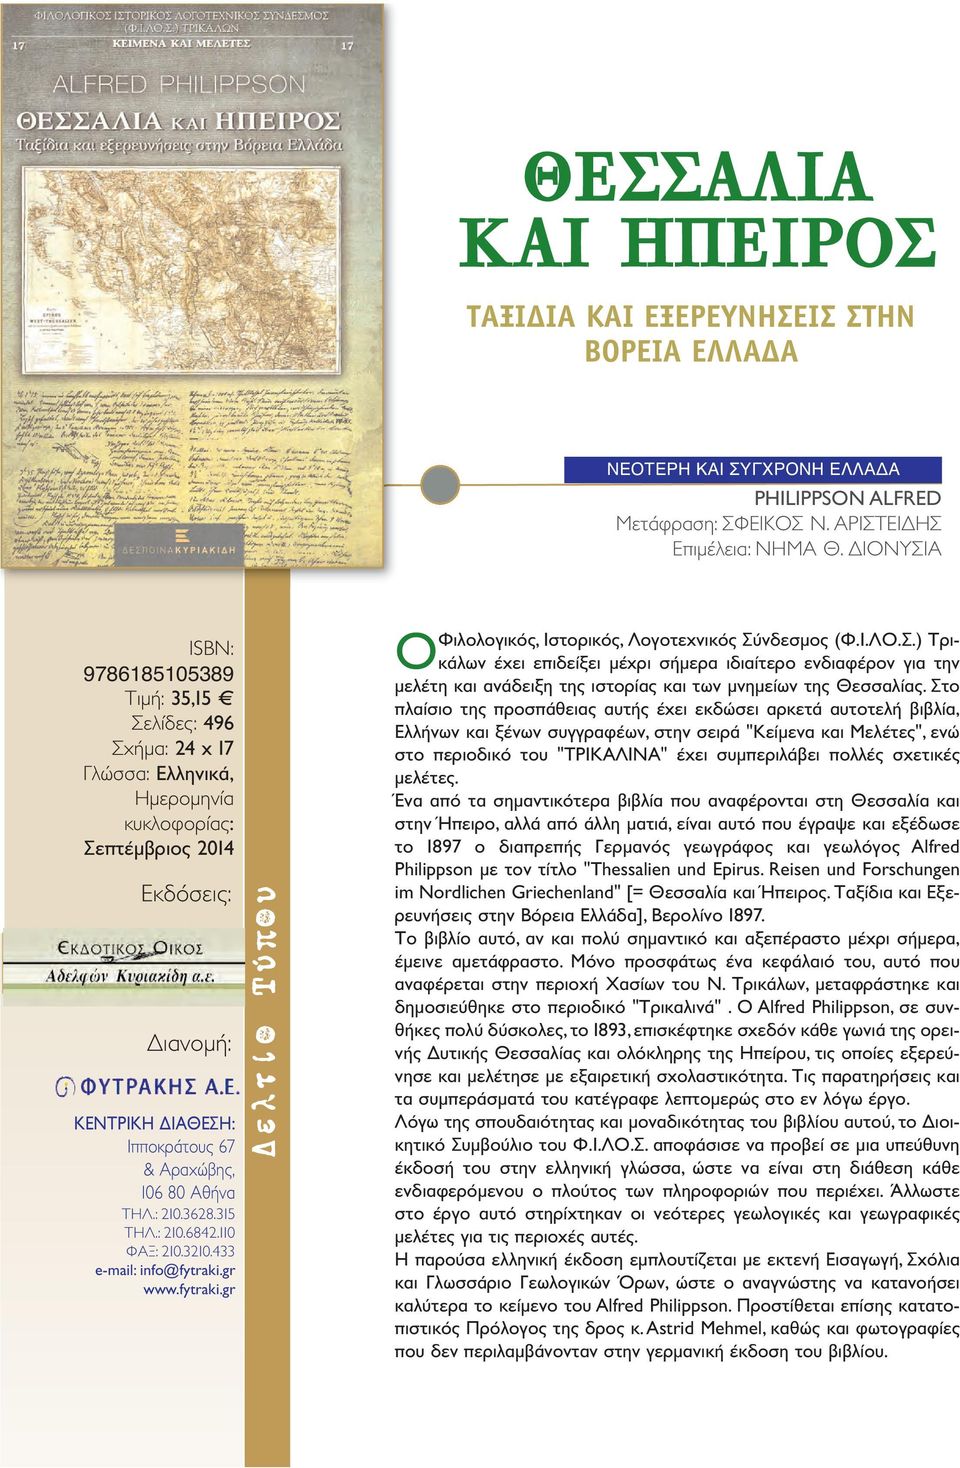 433 ΟΦιλολογικός, Ιστορικός, Λογοτεχνικός Σύνδεσμος (Φ.Ι.ΛΟ.Σ.) Τρικάλων έχει επιδείξει μέχρι σήμερα ιδιαίτερο ενδιαφέρον για την μελέτη και ανάδειξη της ιστορίας και των μνημείων της Θεσσαλίας.